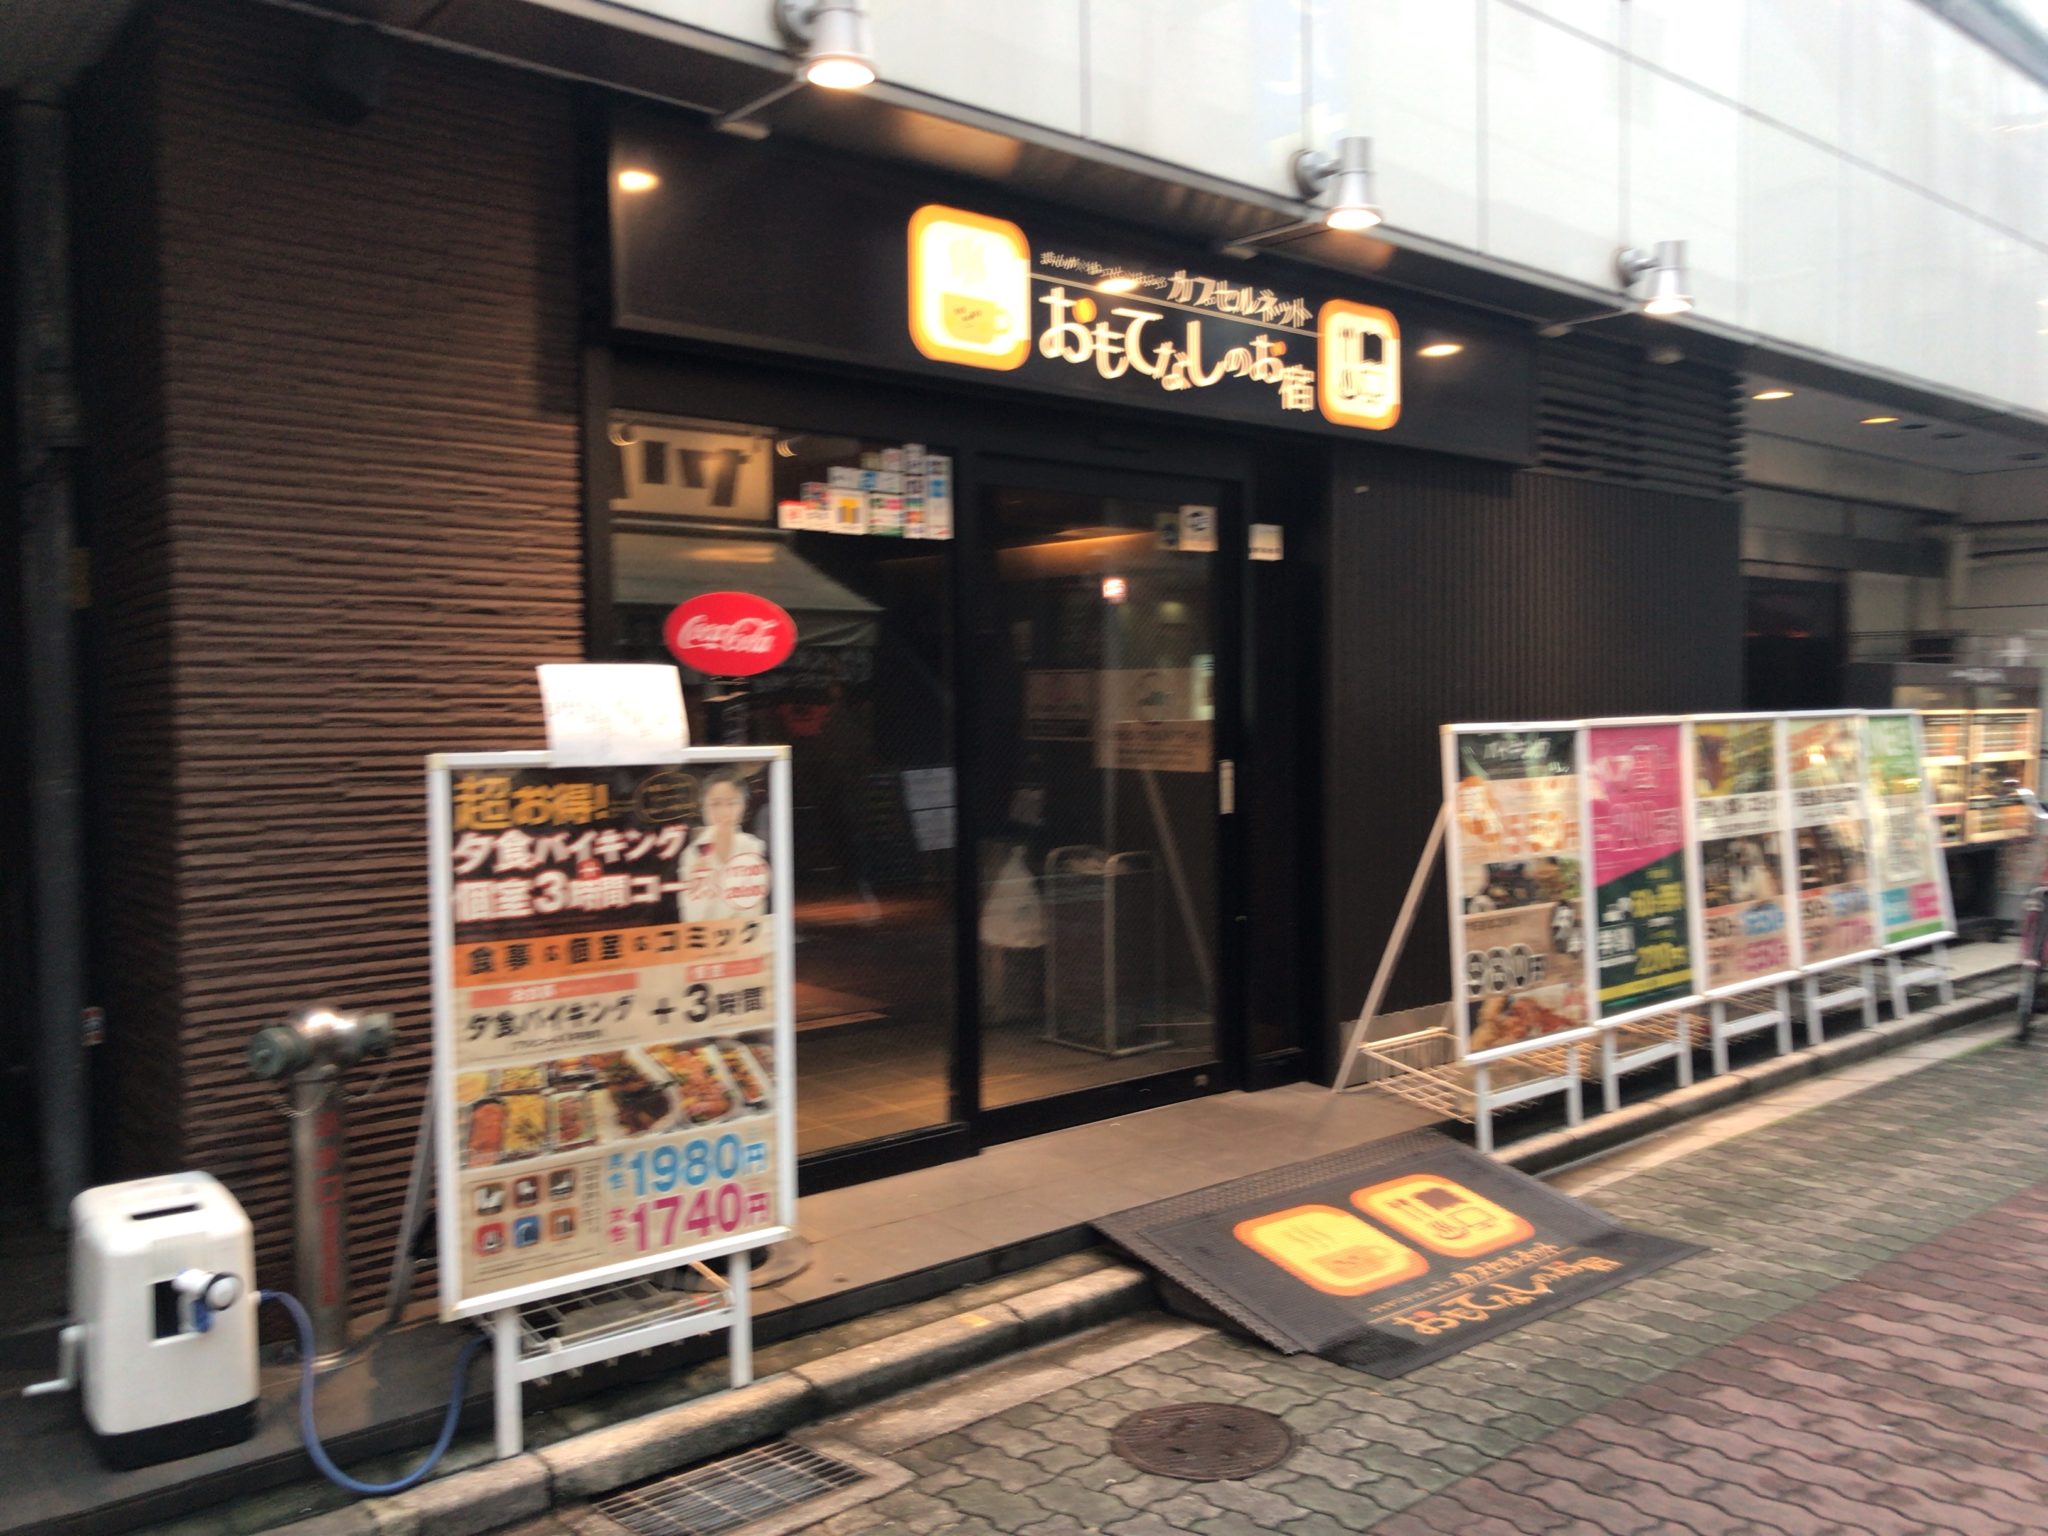 上野駅から徒歩4分 カプセルネットおもてなしのお宿をレポート 日本全国のネカフェ 漫画喫茶マップのヒマップ